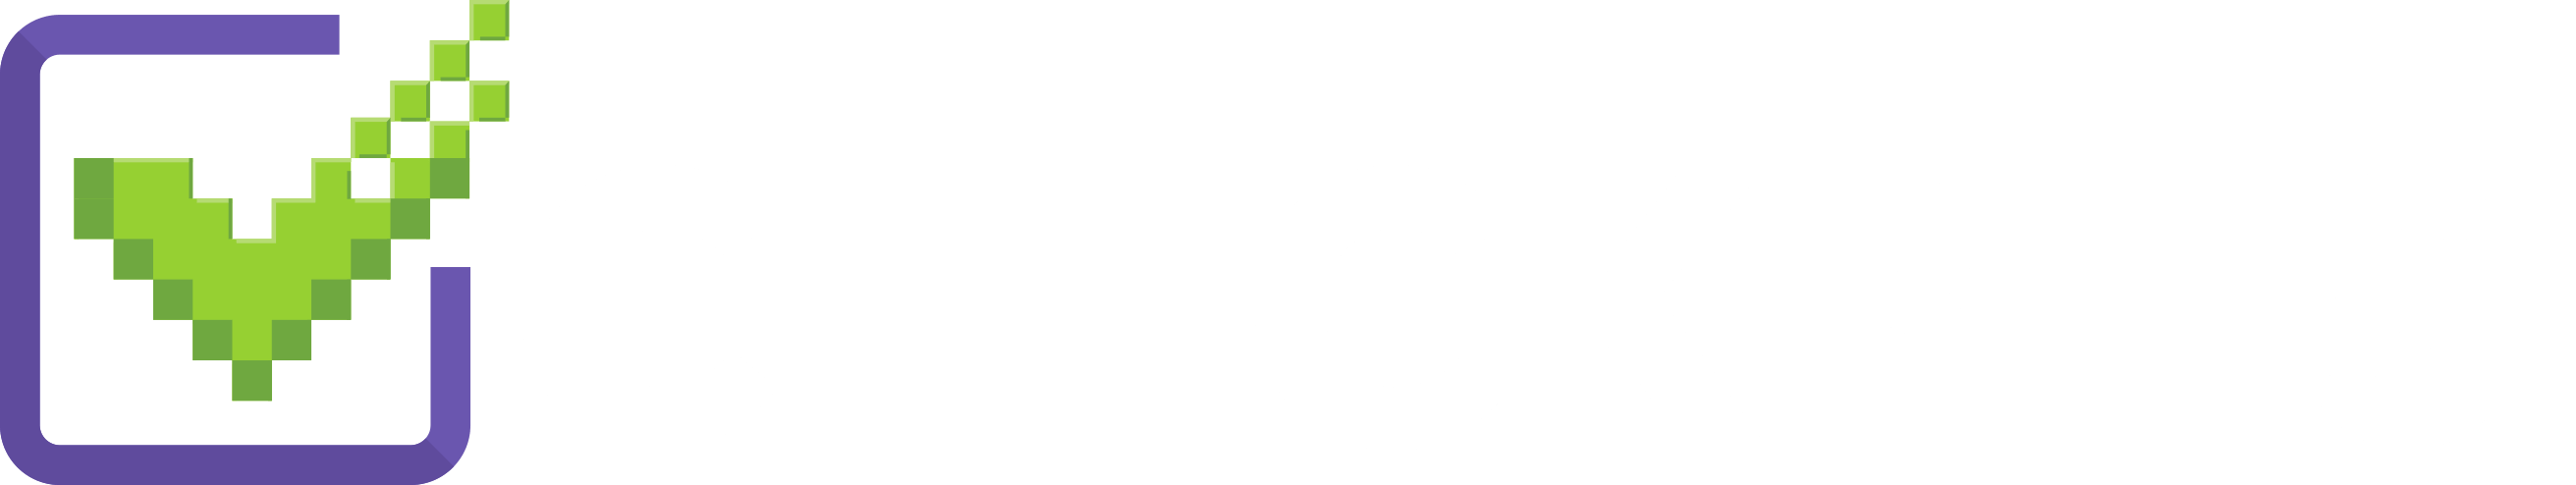 Logo checkbits com registro